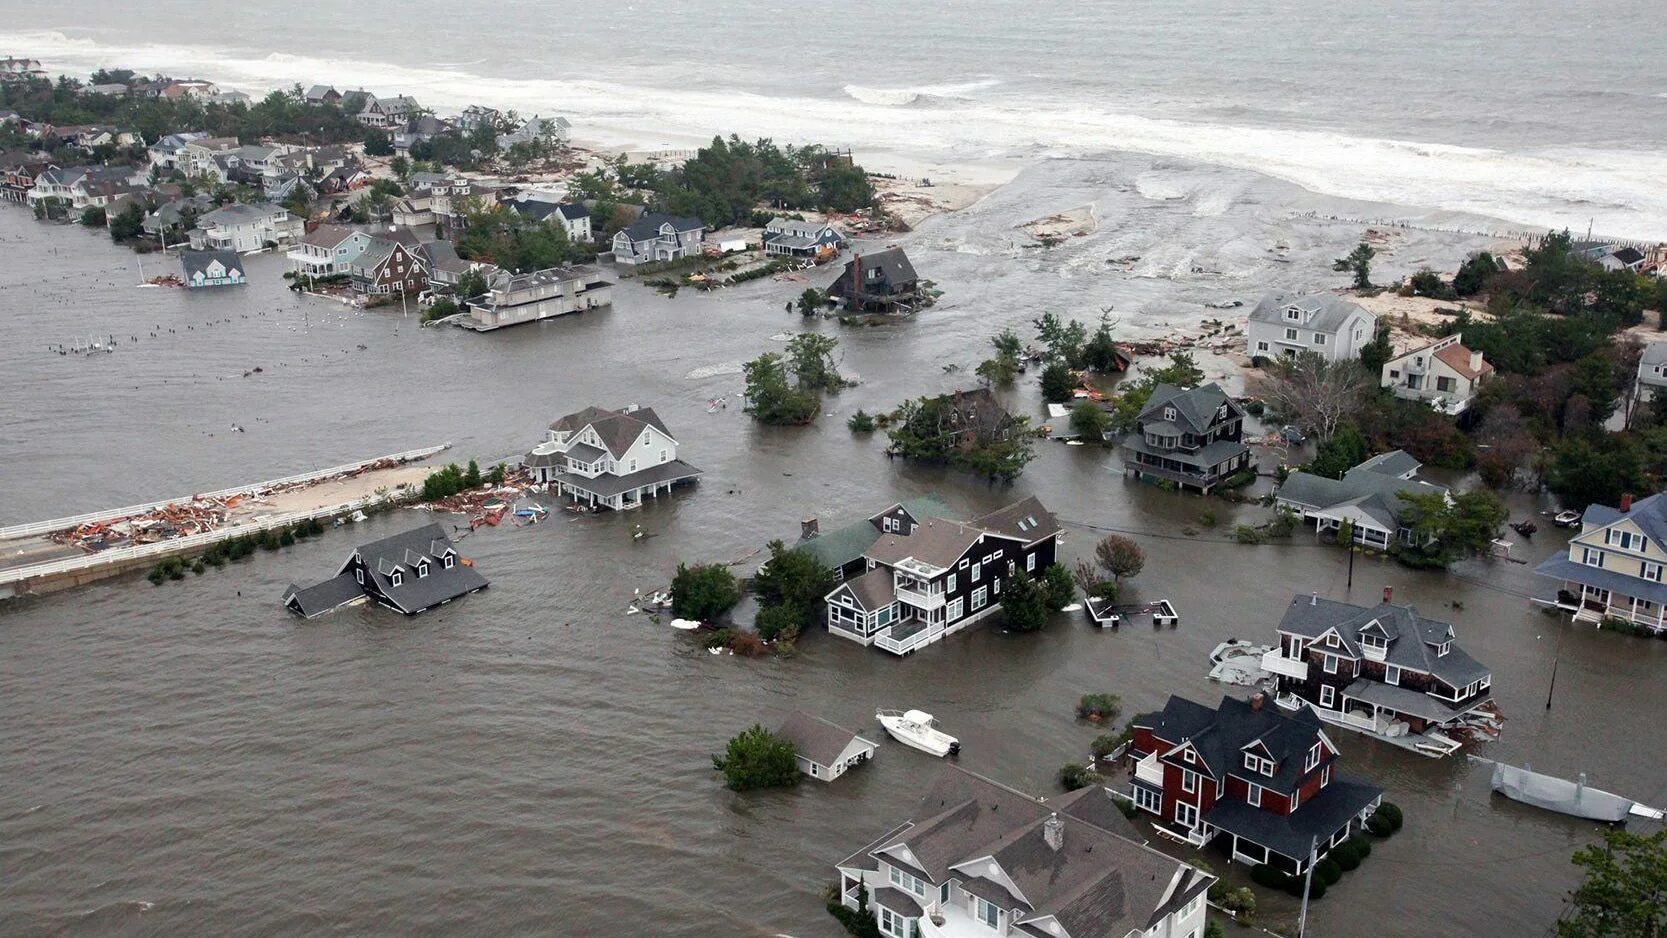 Flood natural disaster. Стихийные бедствия наводнение. Катастрофическое затопление. ЧС наводнение. Затопление островов.